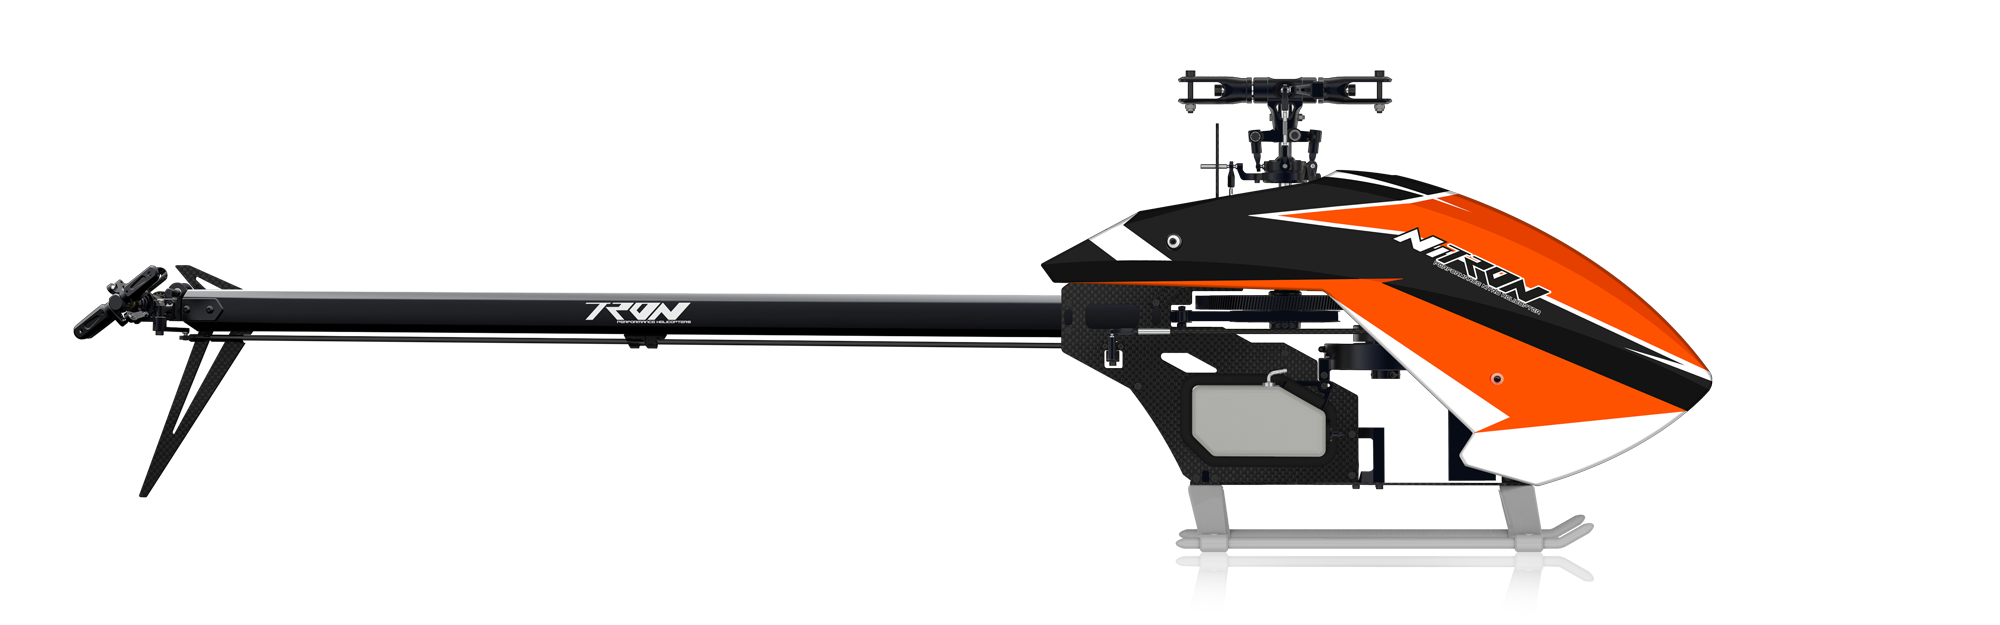 Nitron Helicopter Kit Black / Orange Canopy 24T